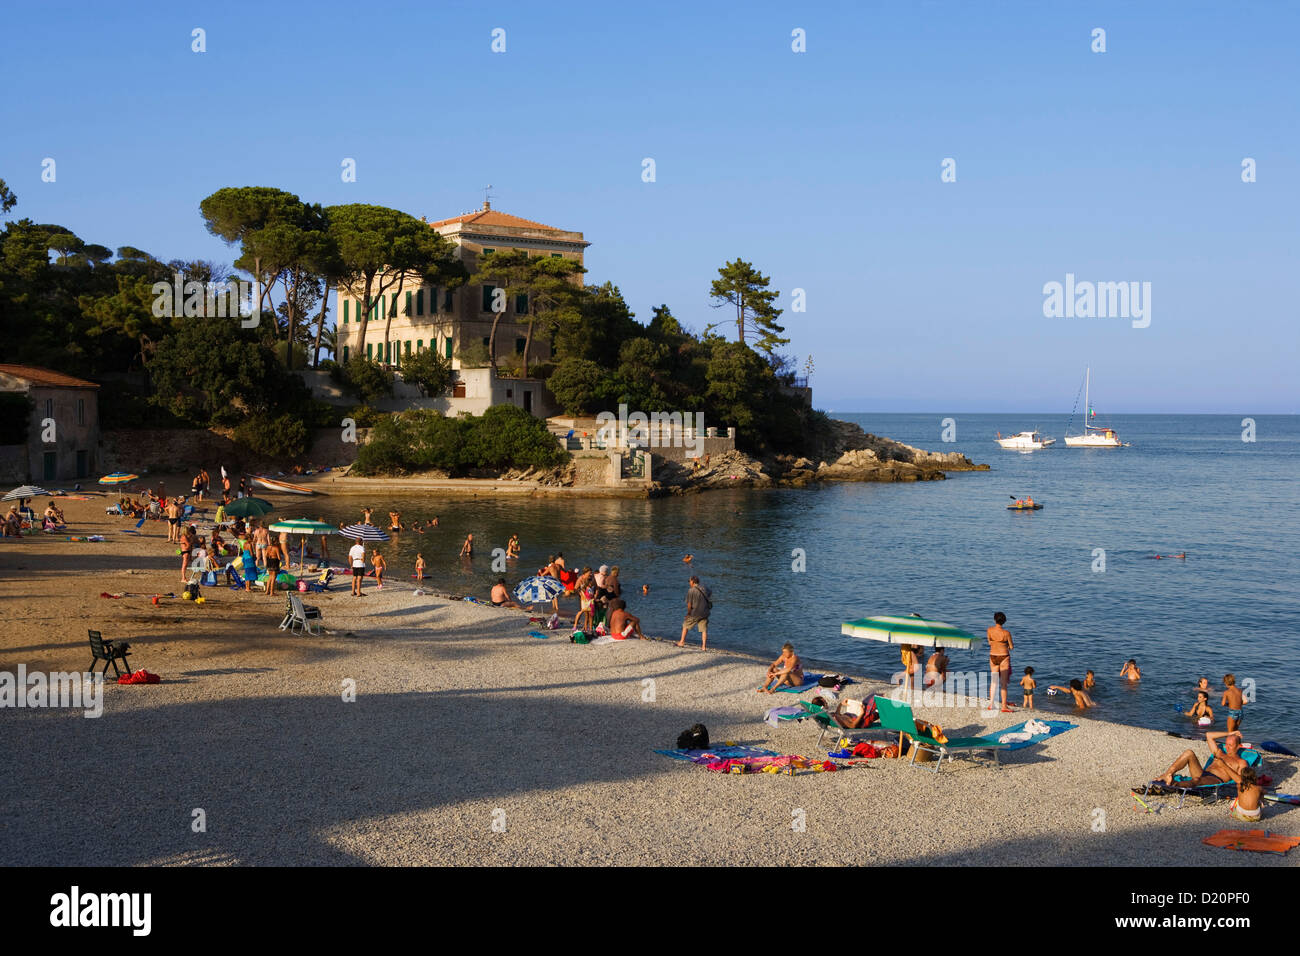 La gente sulla spiaggia di cavo, Isola d'Elba, Toscana, Italia, Europa Foto  stock - Alamy